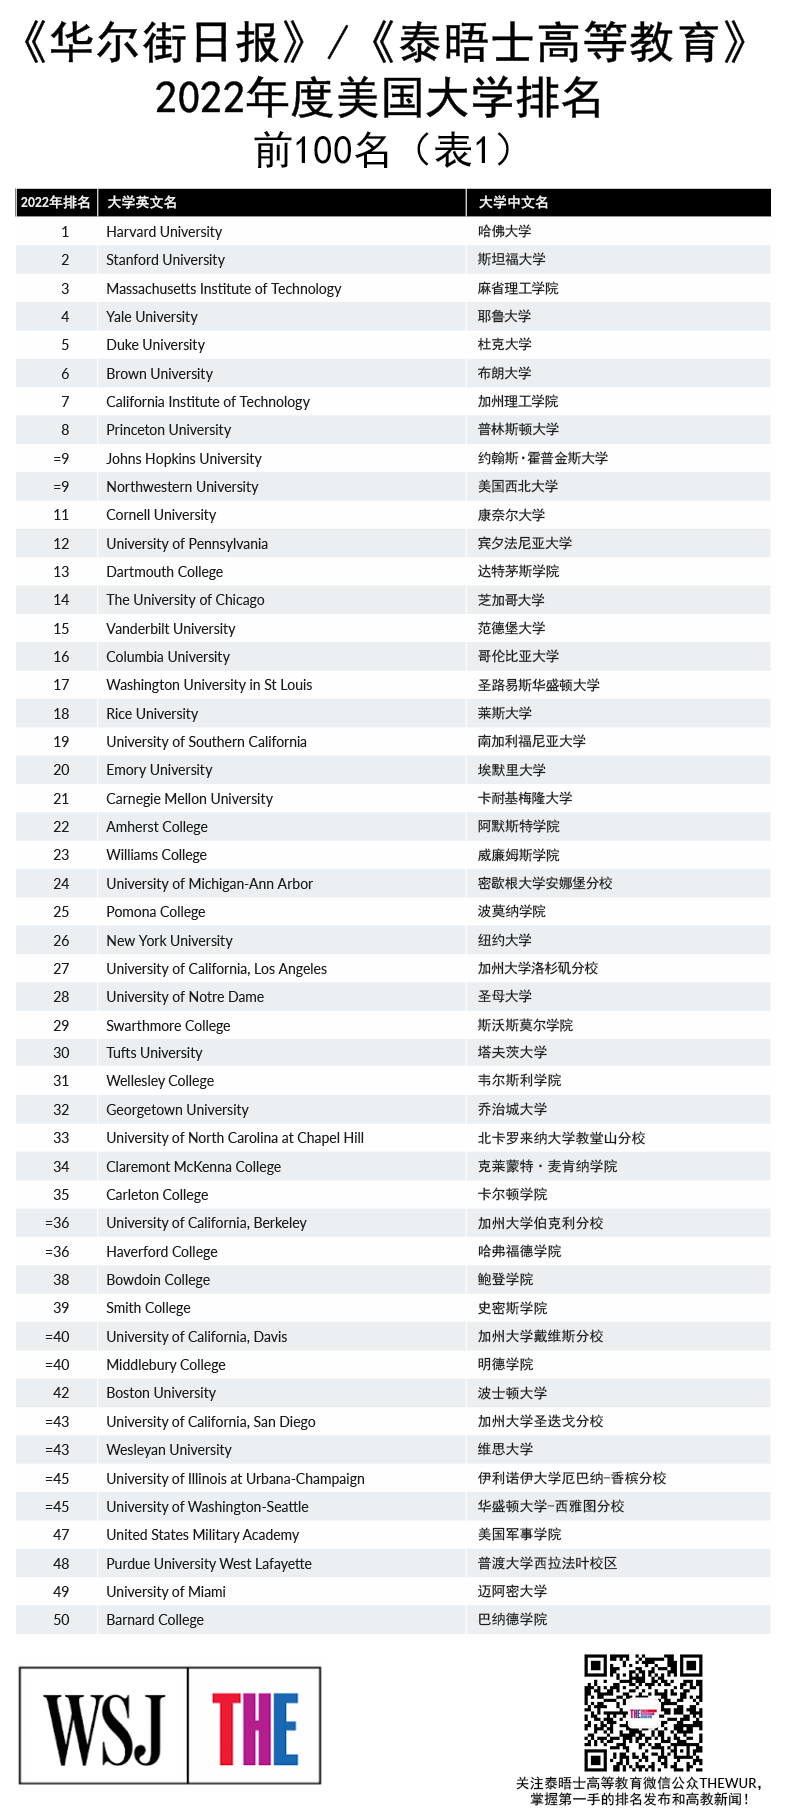 泰晤士2022美国大学排名出炉，美国大学TOP100名单公布